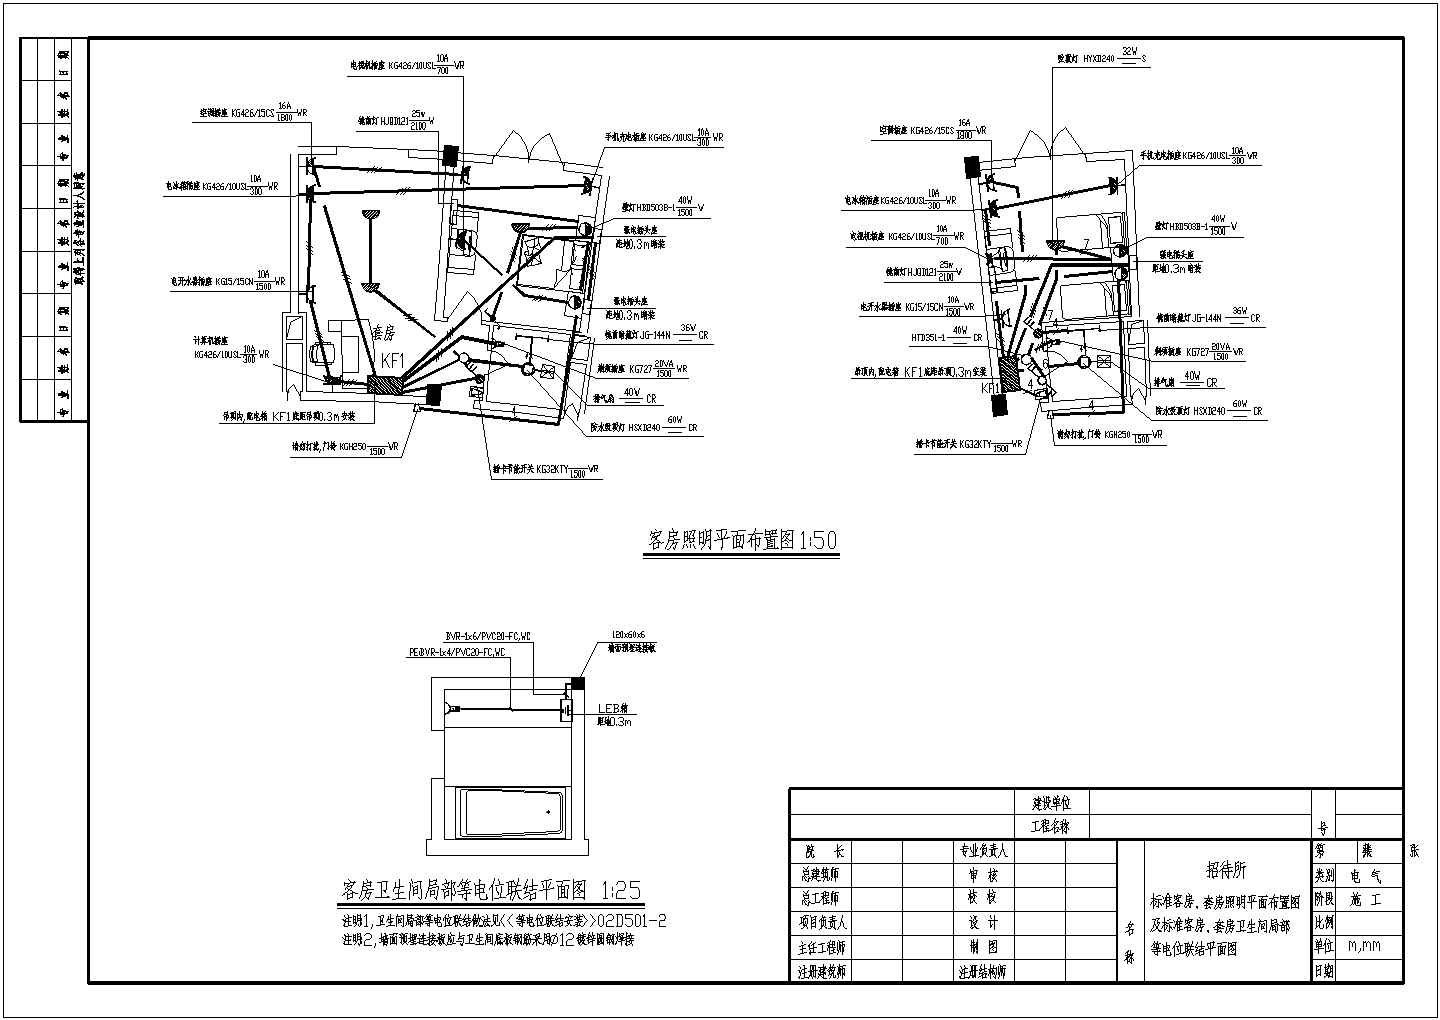 招待所电气设计方案及施工全套CAD图纸